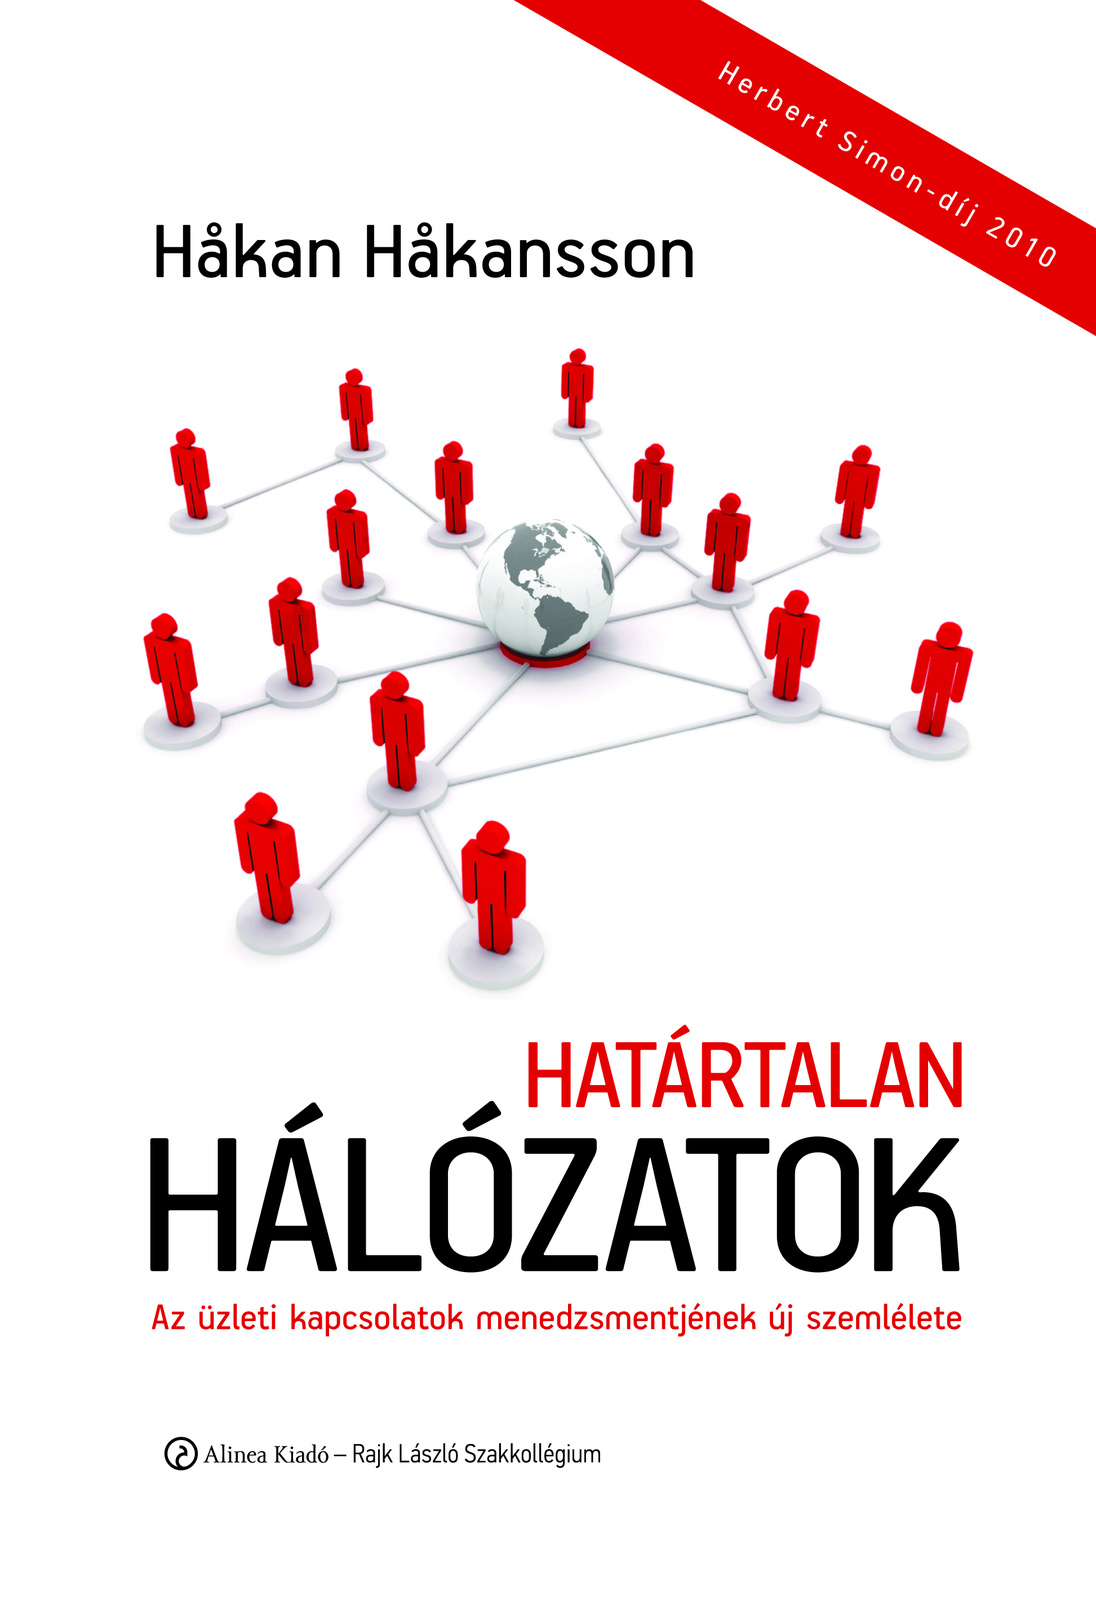 Hakan Hakansson - Hatartalan halozatok